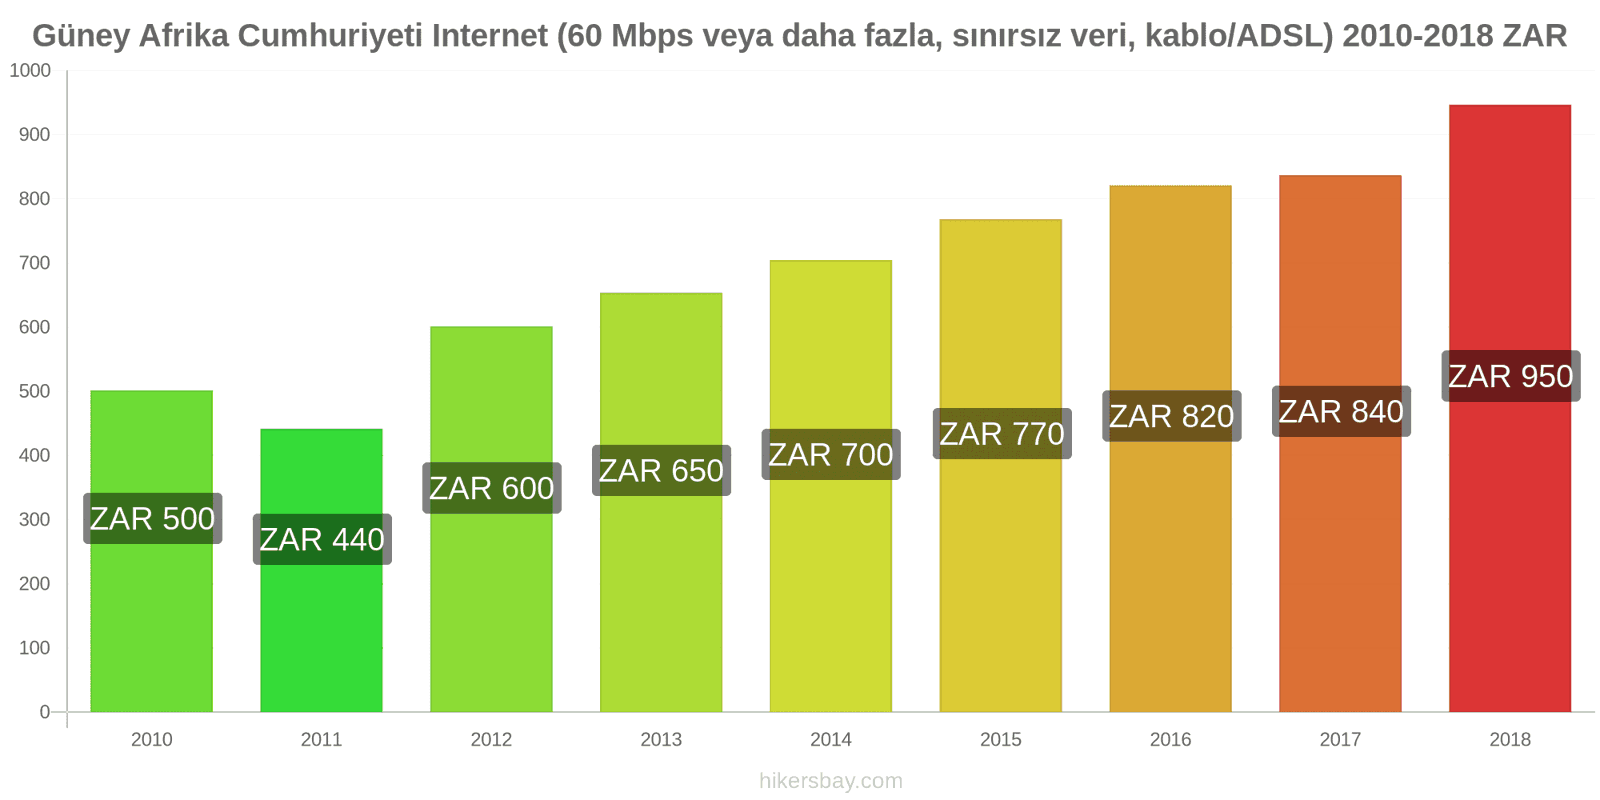 Güney Afrika Cumhuriyeti fiyat değişiklikleri İnternet (60 Mbps veya daha fazla, sınırsız veri, kablo/ADSL) hikersbay.com